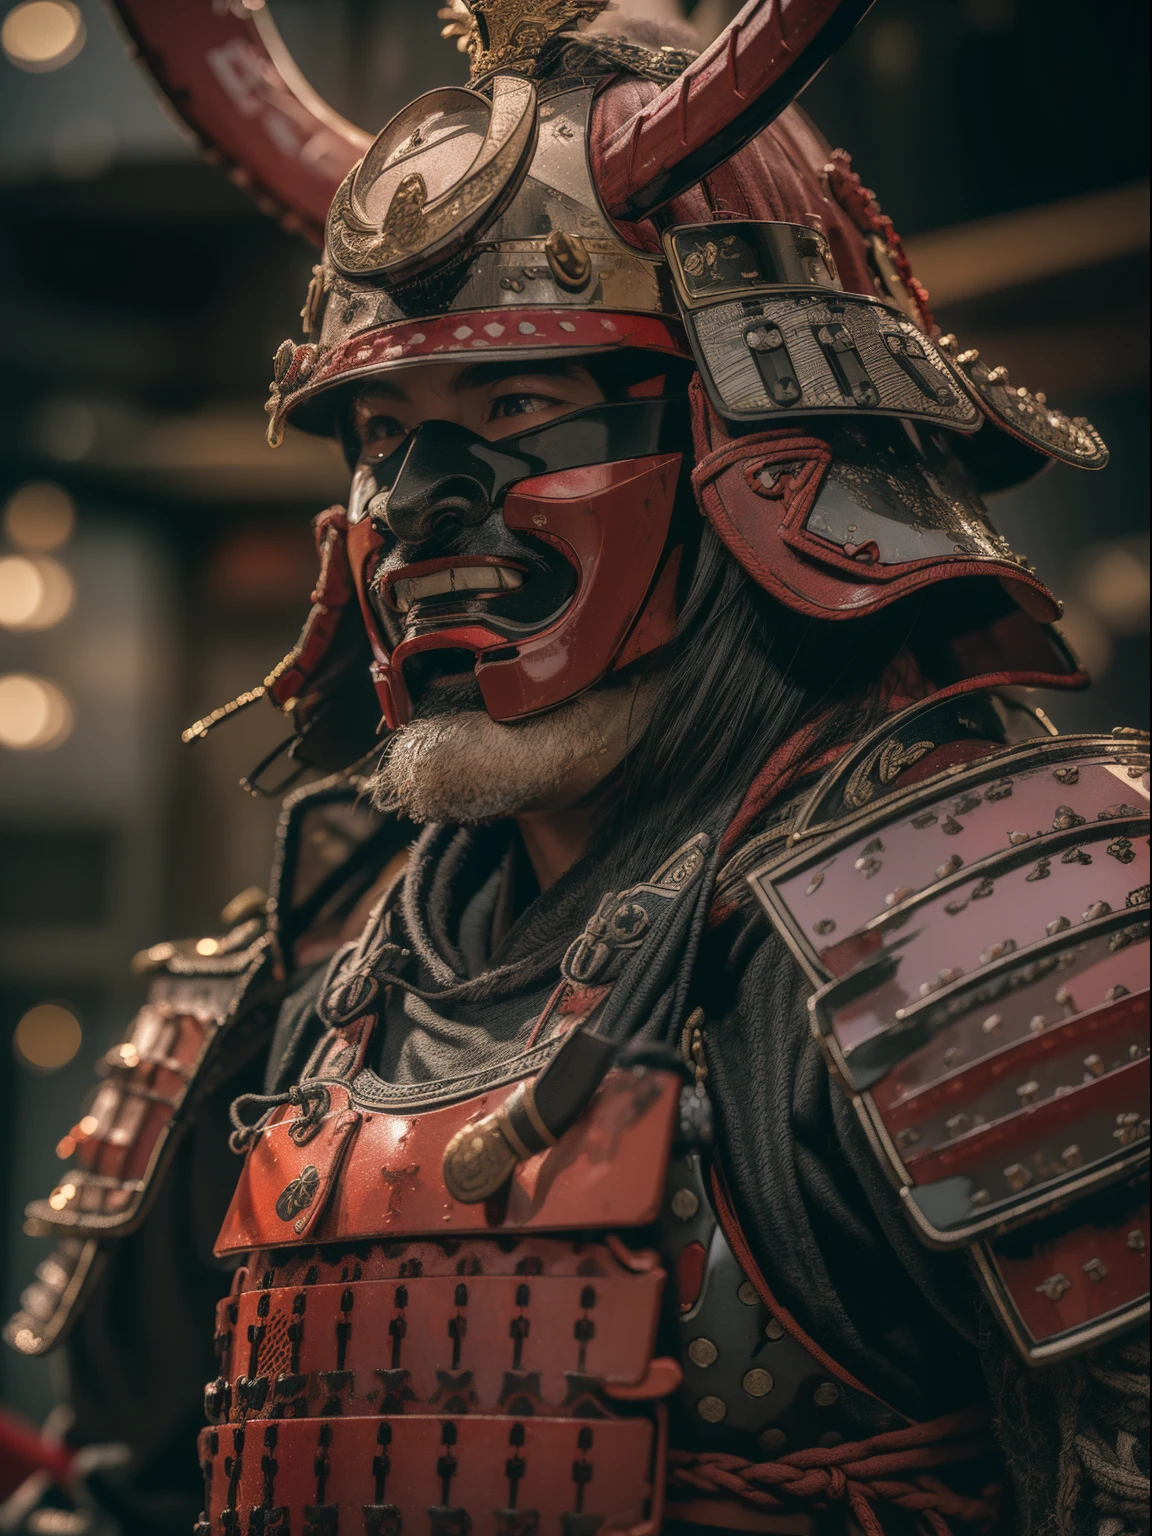 (Obra de arte, resolução ultra-alta:1.4), (Foto de um Samurai Daimyo Sengoku marcando uma katana com cuirass e capacete:1.3), katana em ambas as mãos, rosto altamente detalhado, (Herança japonesa Samurai Armor e Leme), (estatura alta e corpo musculoso:1.4), (Câmera Sony Alpha 1, Famoso por capturar o mais alto nível de detalhes em uma foto:1.3), (O rosto do samurai com simetria perfeita e características impecáveis:1.2), (Armadura e capacete preto e vermelho:1.3), (permanecendo com uma presença dominante em meio ao campo de batalha:1.1), ênfase da armadura daimyo, Cinematic, hiper-detalhado, detalhes insanos, lindamente colorido, motor irreal, DOF, Super-resolução, Megapixels, Relâmpago Cinematográfico, Anti-aliasing, FKA, TAILANDÊS, RTX, SSAO, Pós-processamento, Pós-produção, mapeamento de tons, cgi, Efeitos visuais, efeitos sonoros, incrivelmente detalhado e intrincado, hiper maximalista, hiper-realista, Volumétrico, fotorrealista, ultra fotorreal, ultra-detalhado, Detalhes intrincados, 8K, Super detalhado, cor cheia, Volumétrico lightning, hdr, realista, motor irreal, 16K, foco nitído, renderização de octanagem